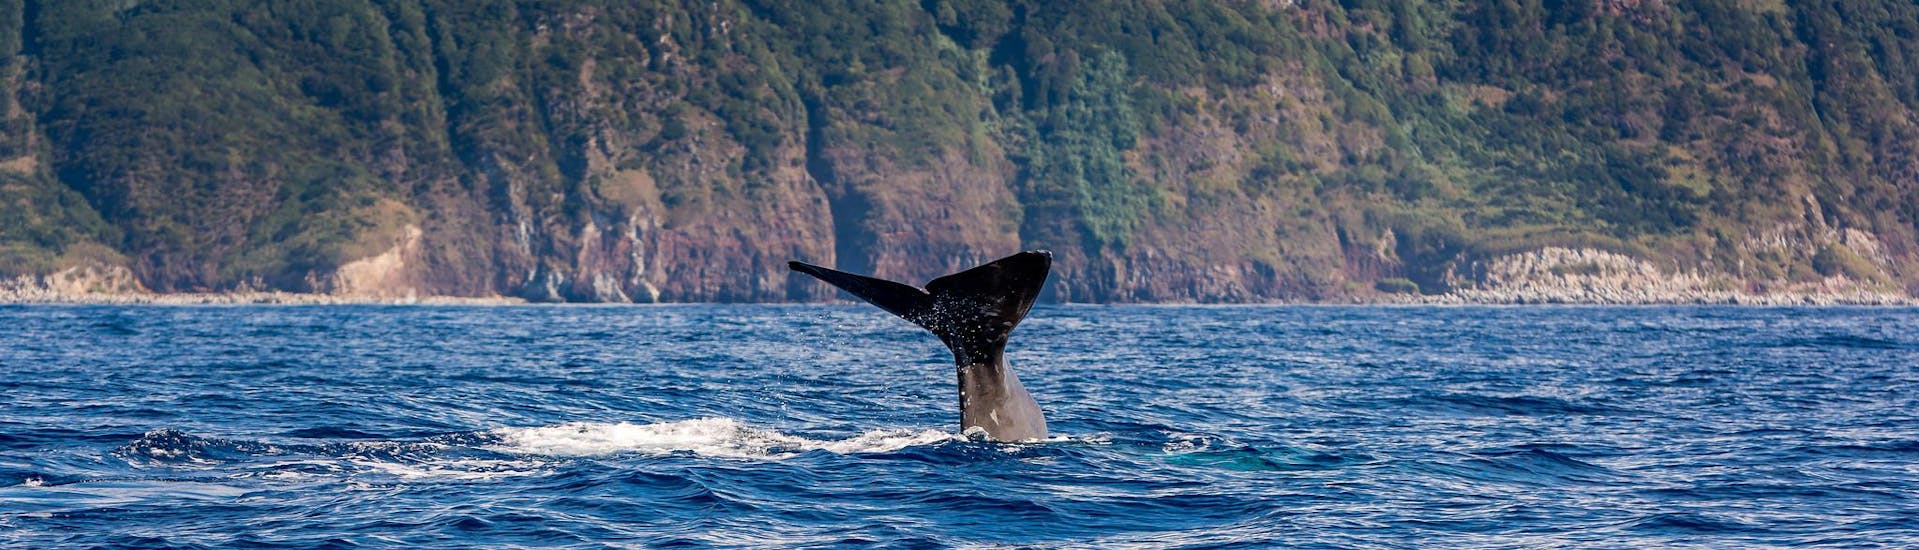 Una coda di balena avvistata dalle persone che partecipano a una gita in barca per l'osservazione delle balene.